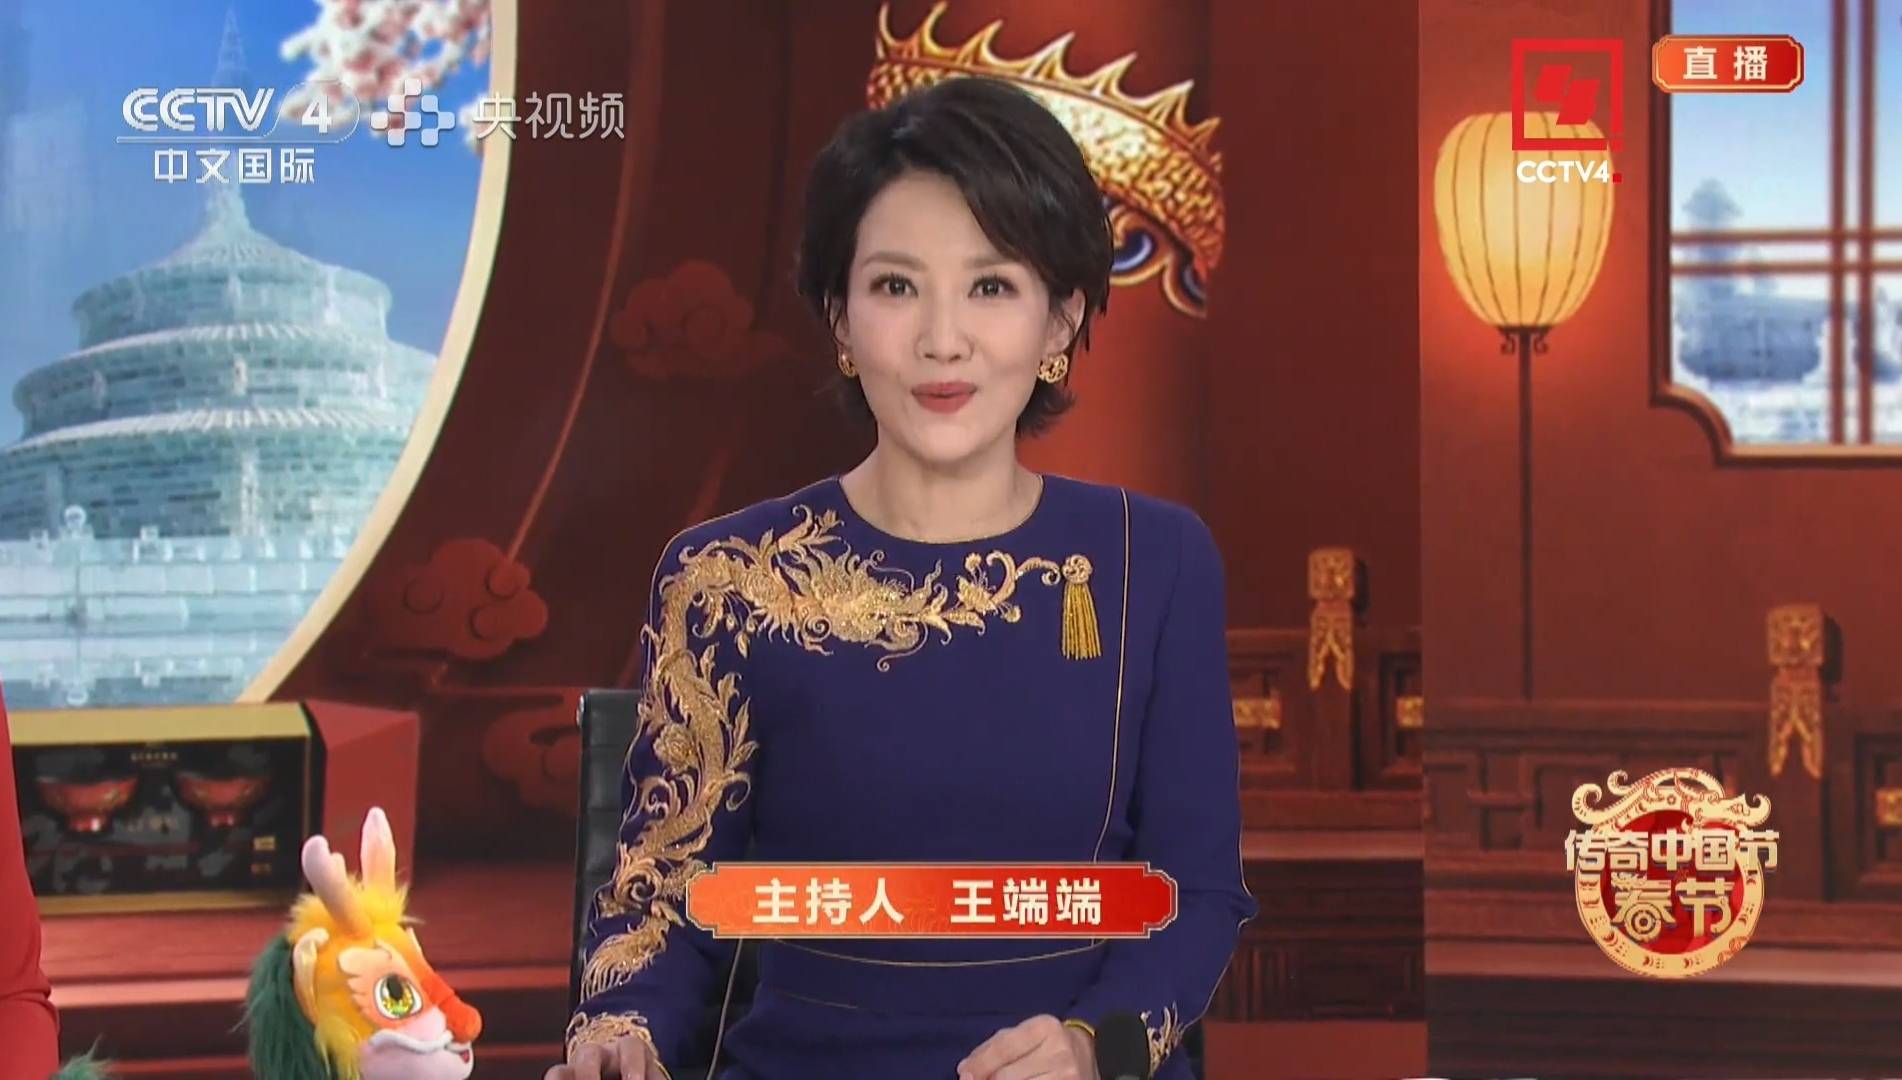 相对于《一年又一年》来说,《传奇中国节》可看性,趣味性兼备